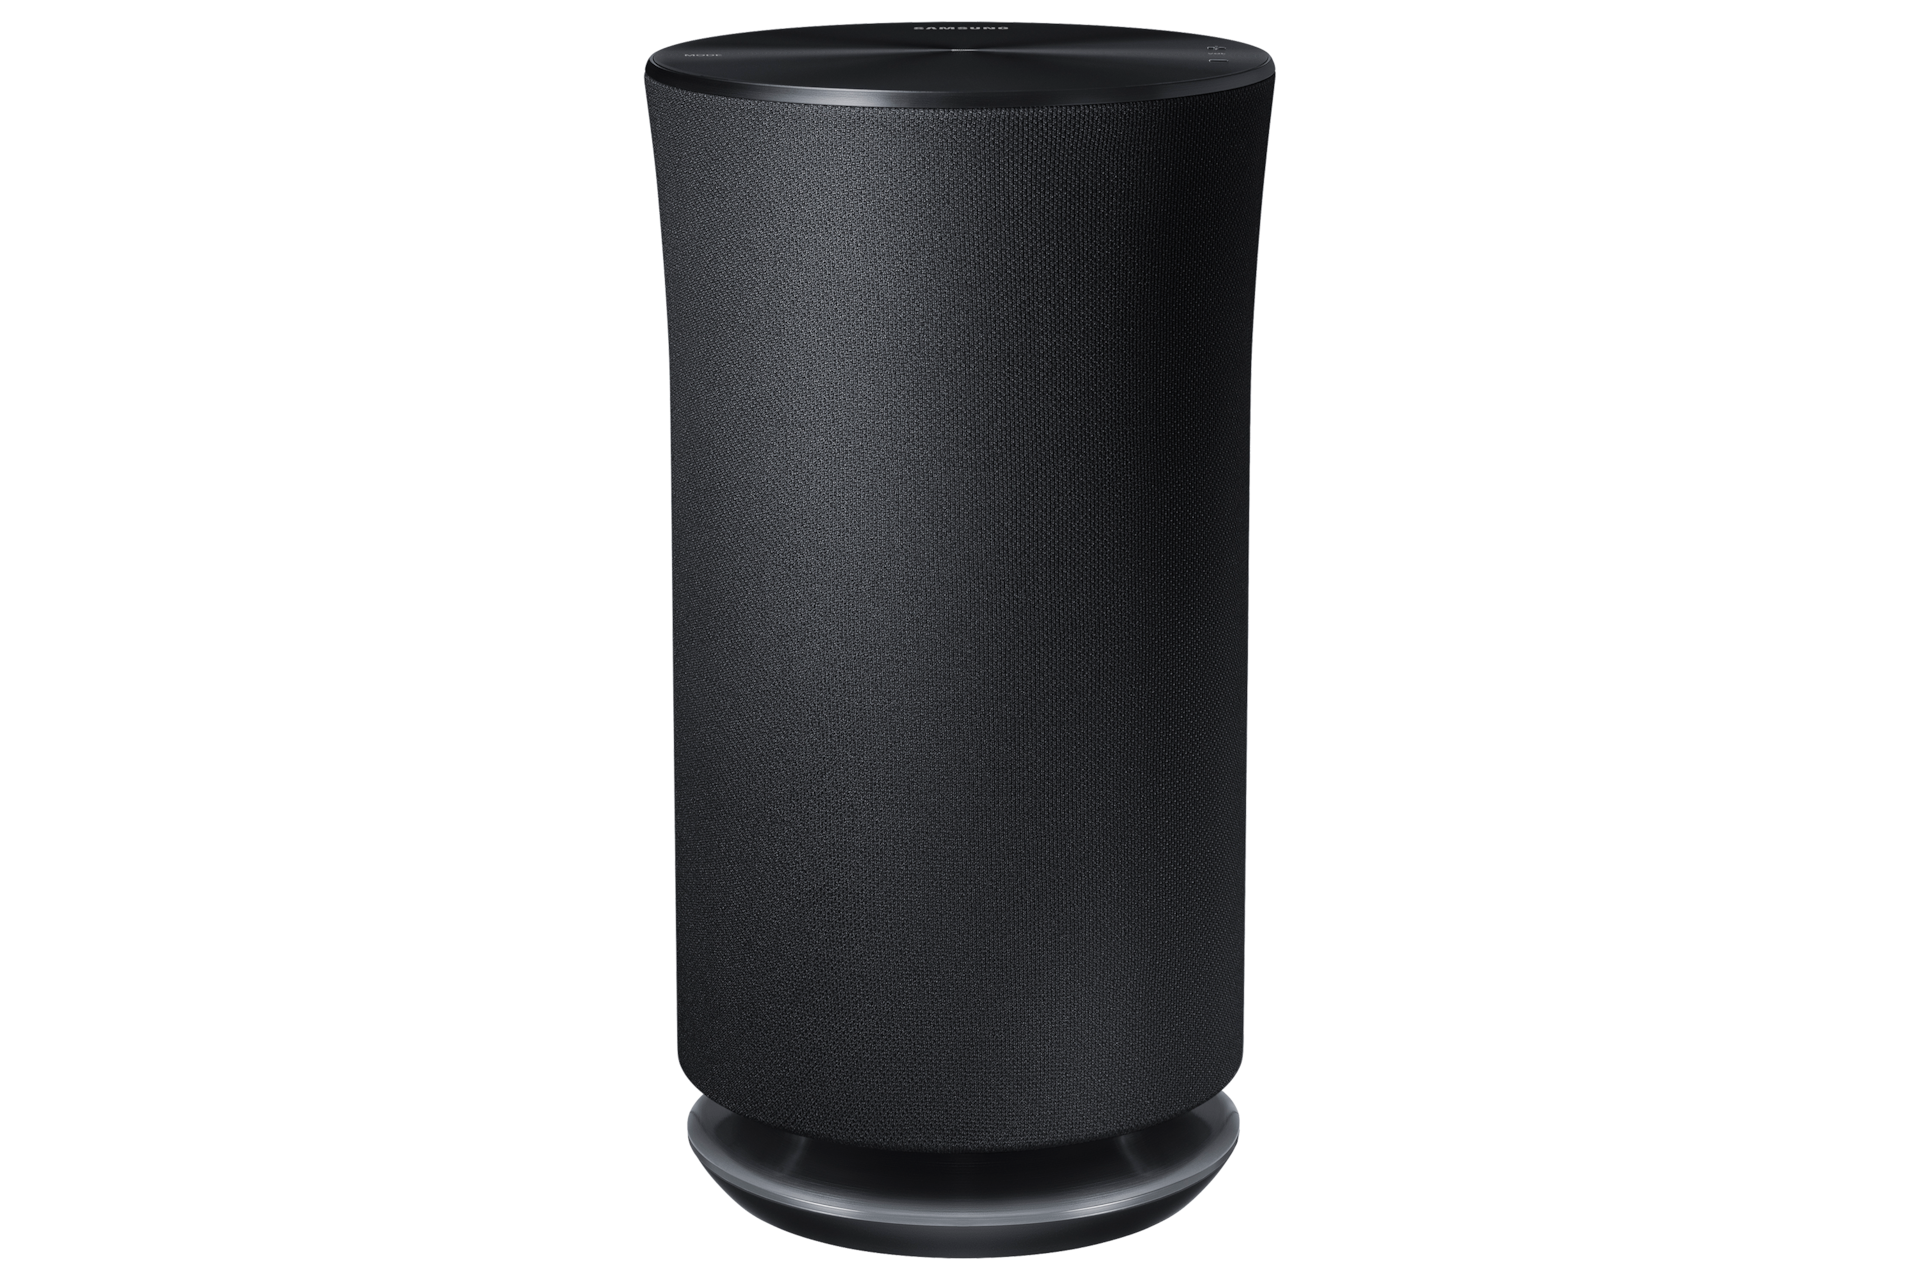 ik ben trots Omgaan met Bijdrage Wireless 360° Speaker R5 | Samsung Service NL